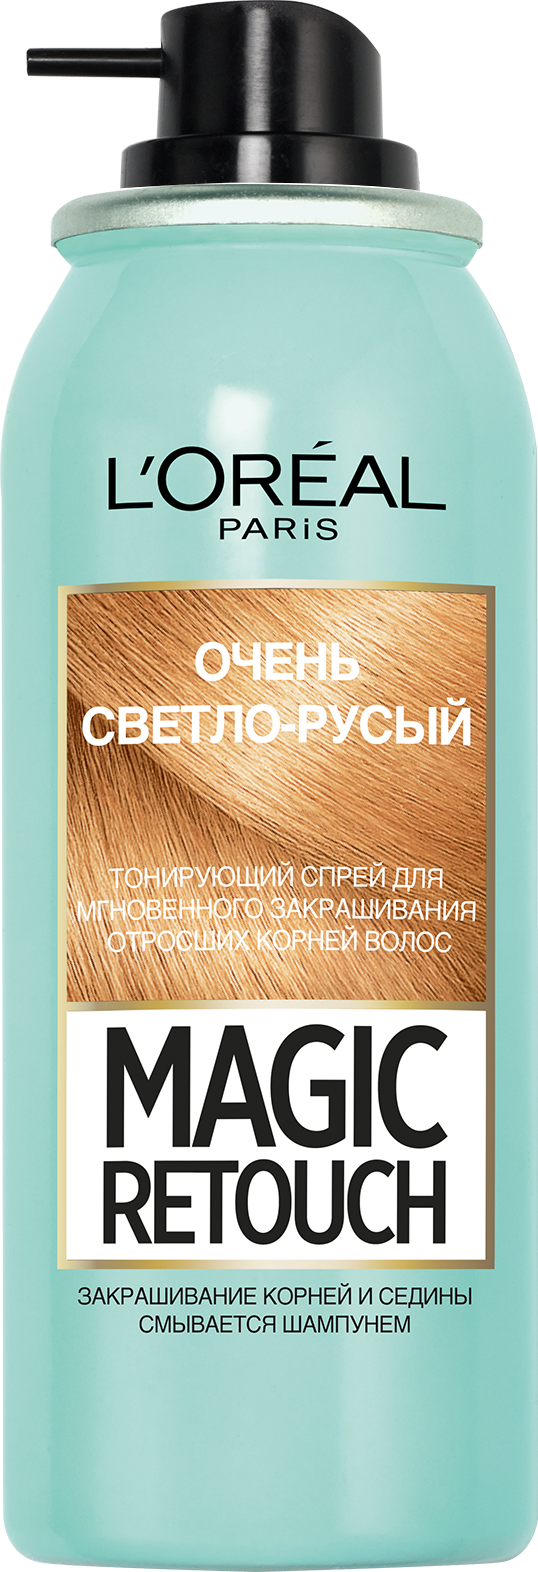 Тонуючий спрей для волосся L'Oreal Paris Magic Retouch, відтінок 09 (дуже світло-русявий), 75 мл - фото 3